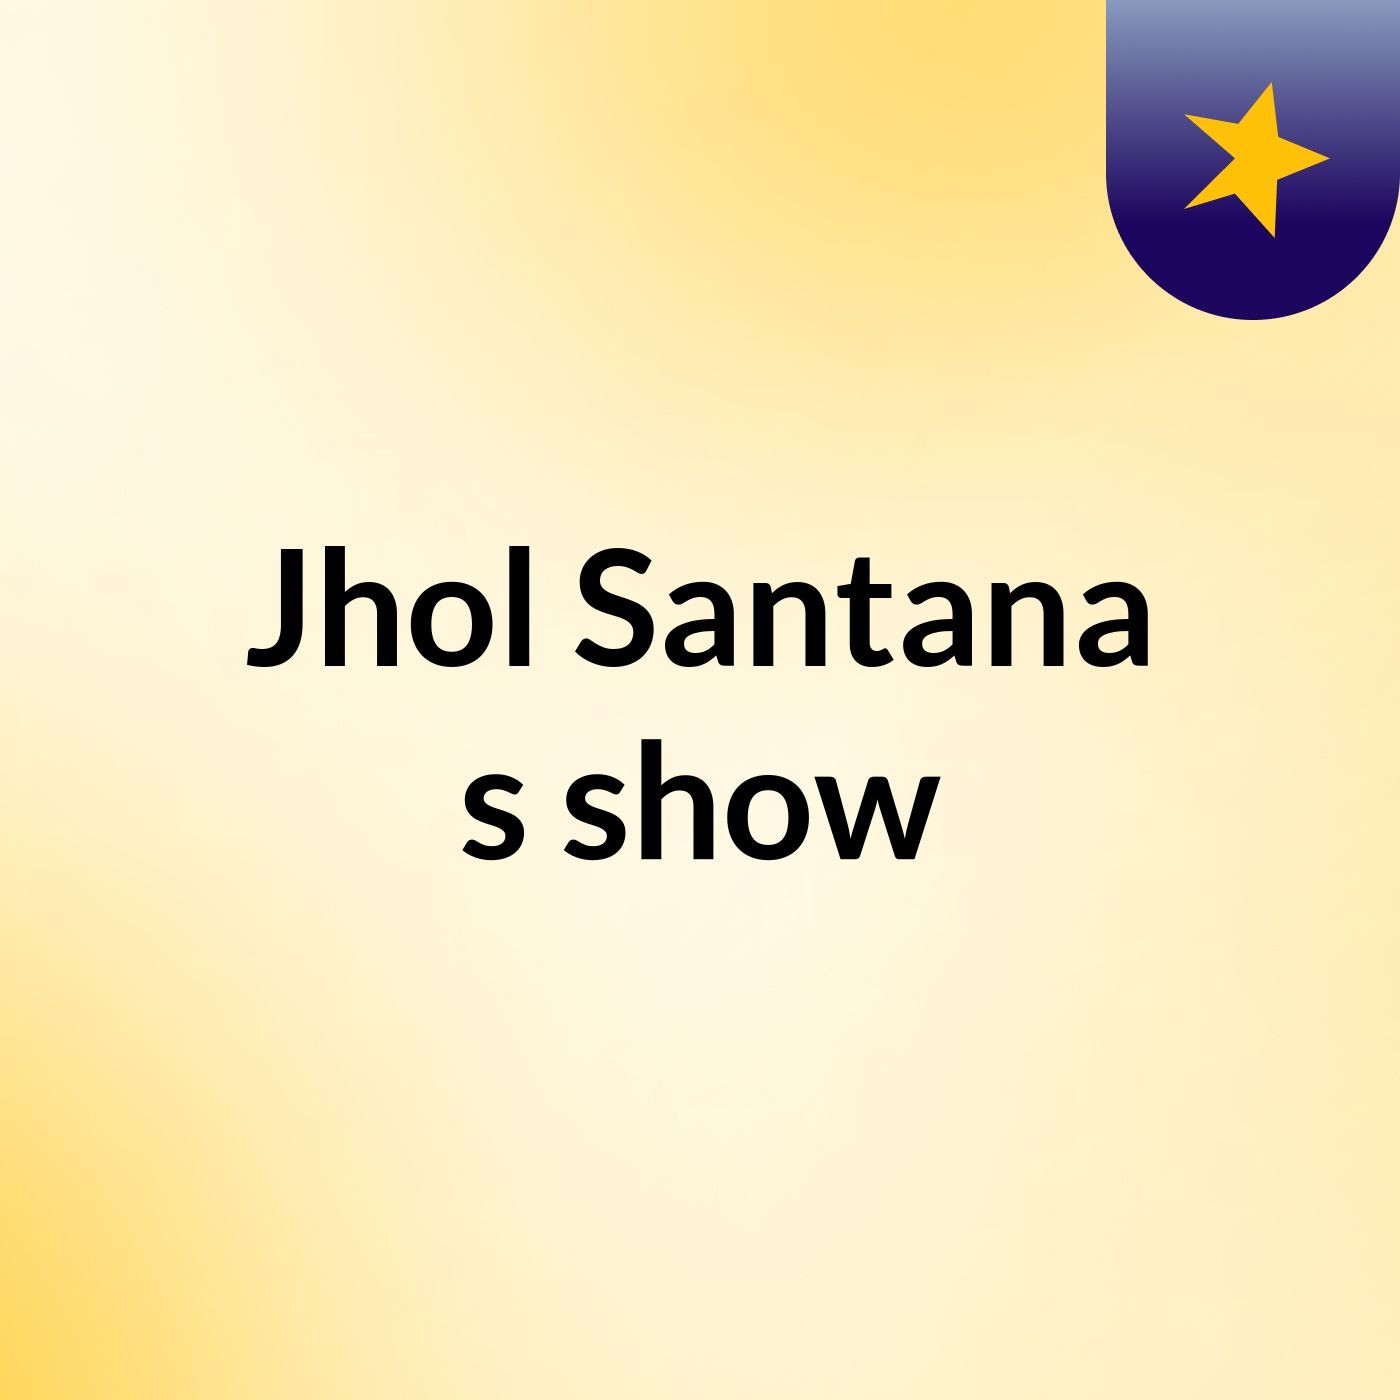 Jhol Santana's show